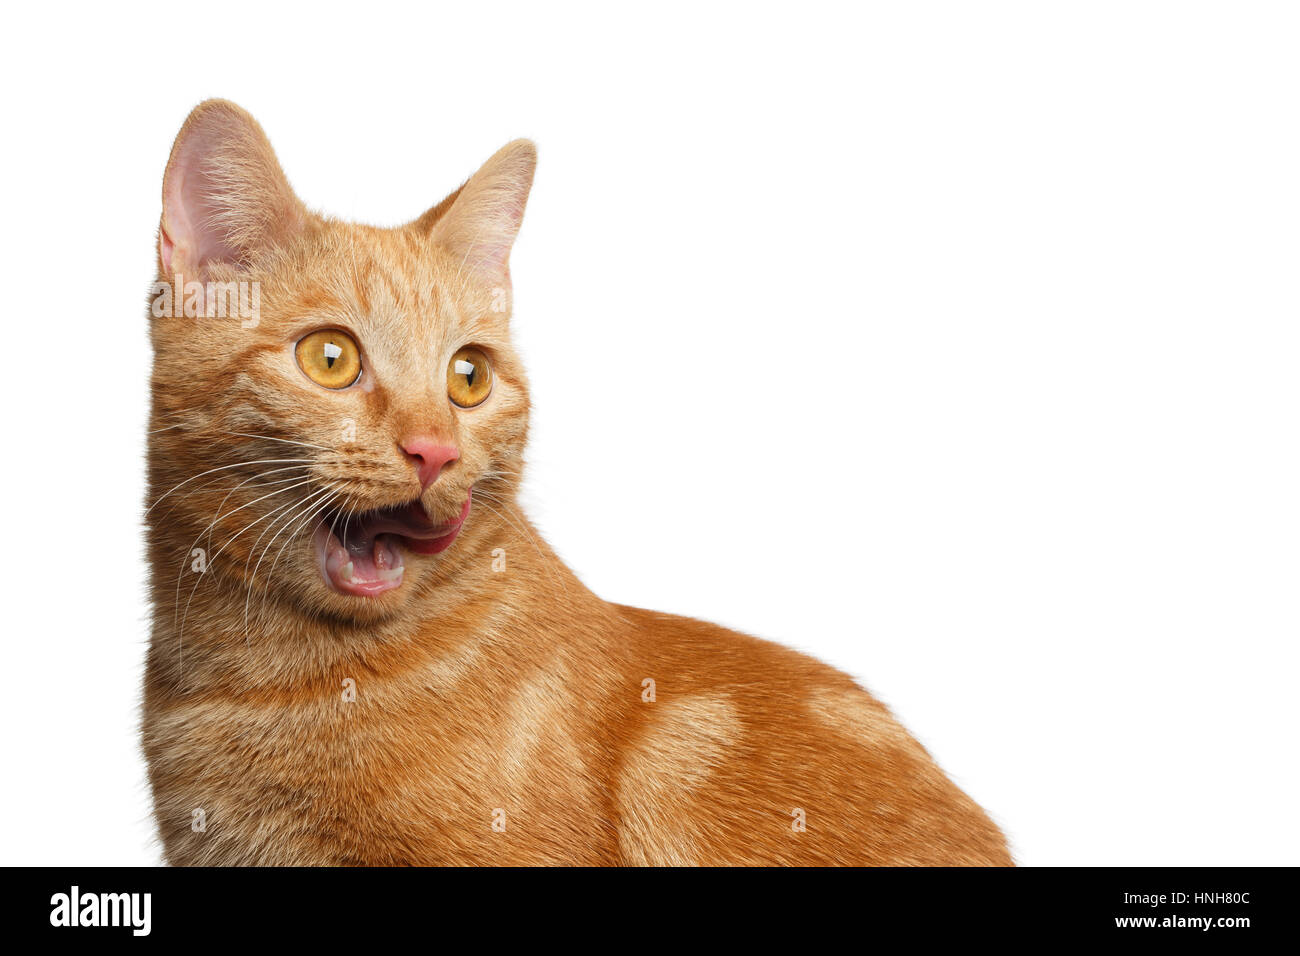 Portrait de Gingembre Cat surpris, bouche ouverte sur un fond blanc, side view Banque D'Images